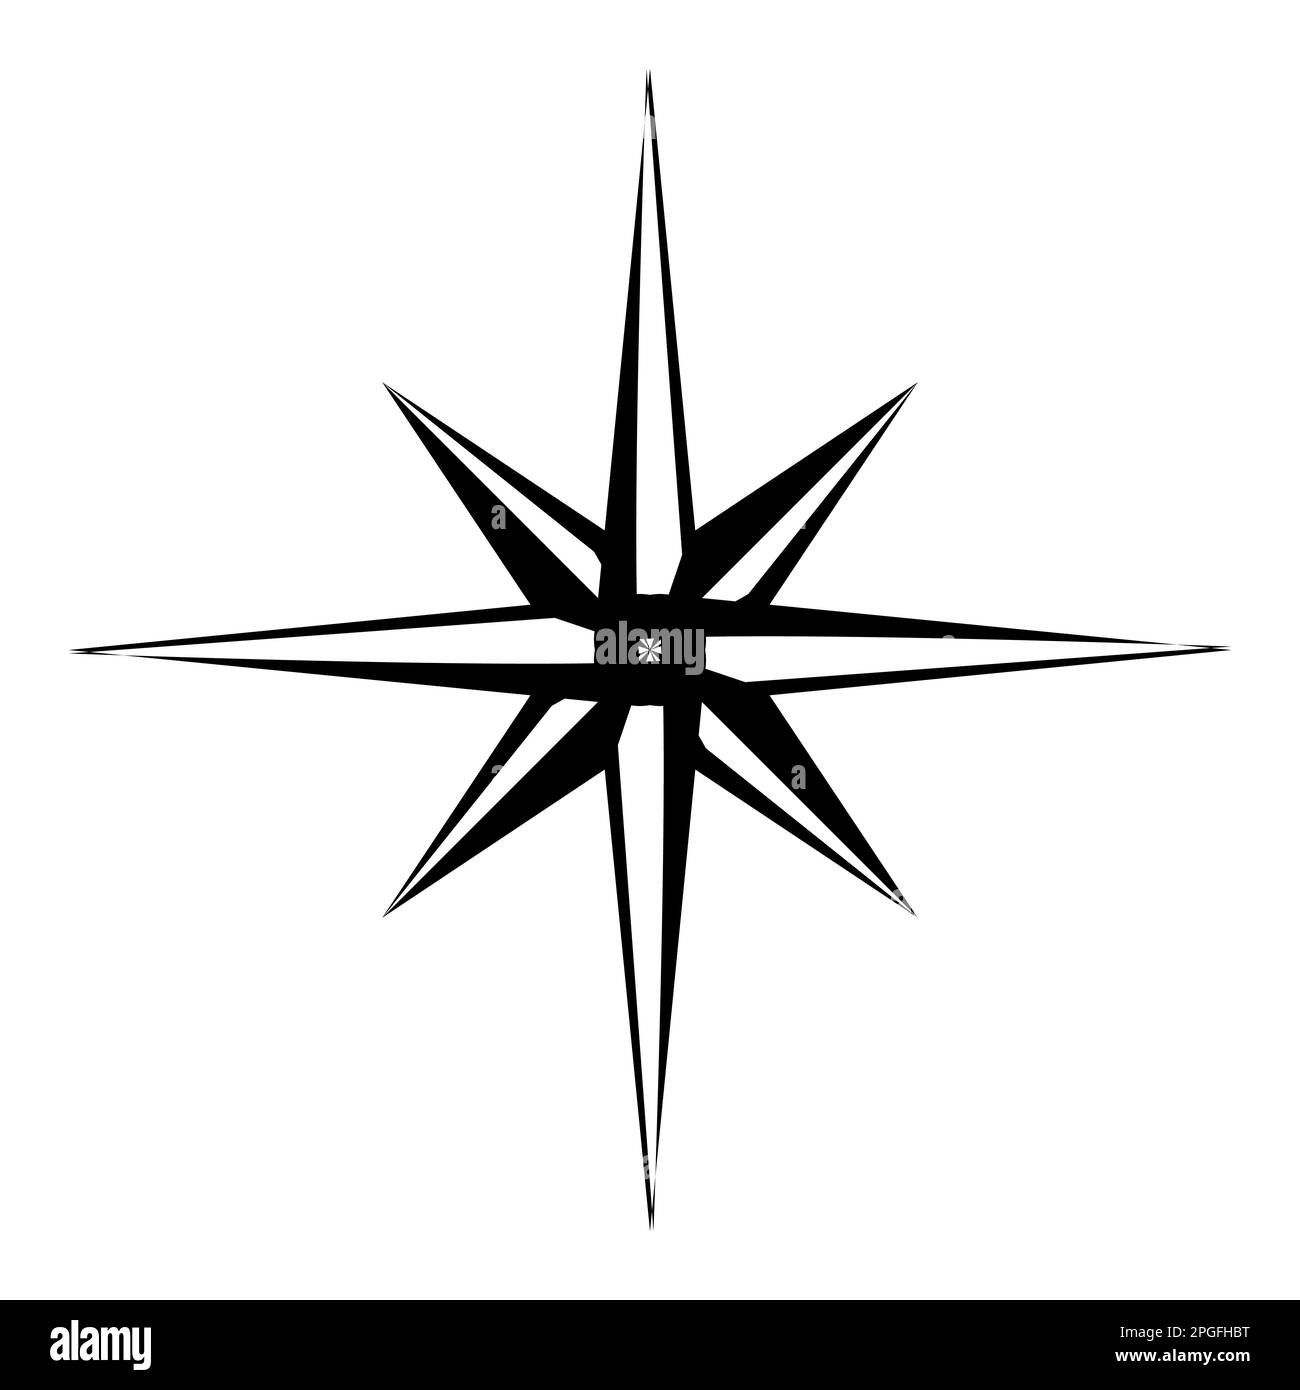 Logo boussole Banque d'images noir et blanc - Alamy